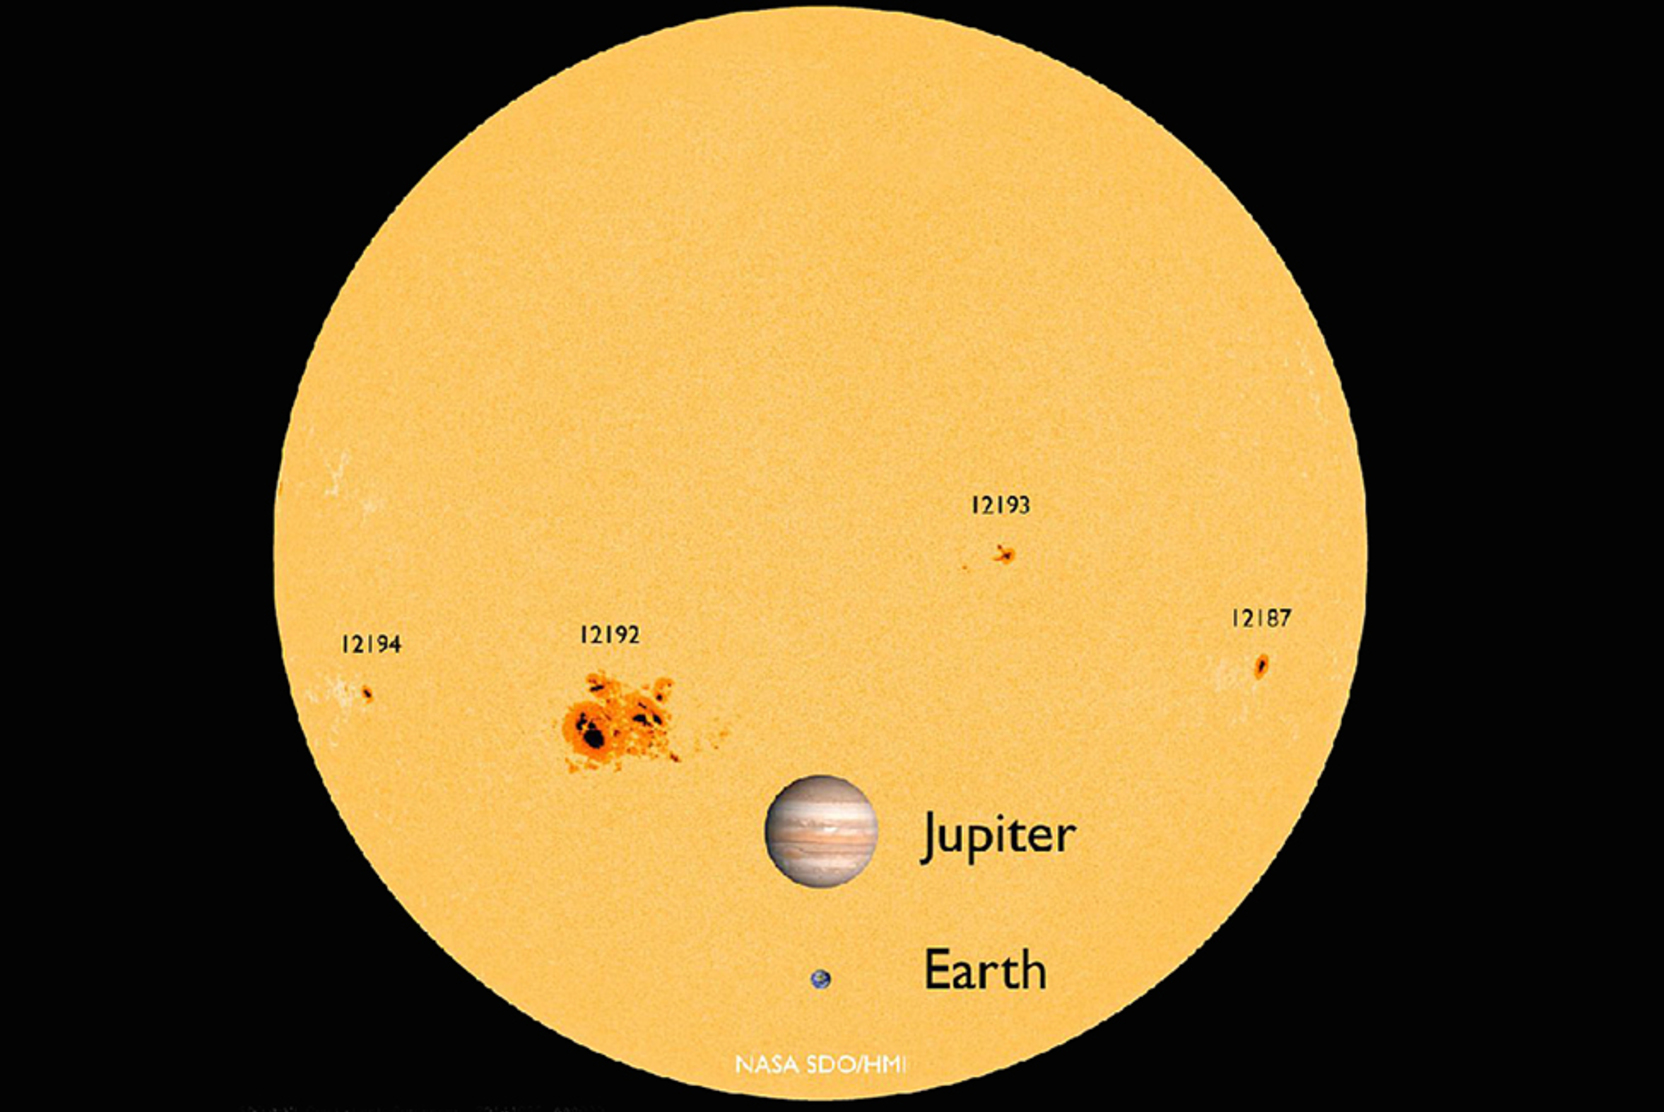 Сколько размер солнца. Сравнение размеров солнца. Солнце и земля сравнение размеров. Юпитер в сравнении с землей и солнцем.